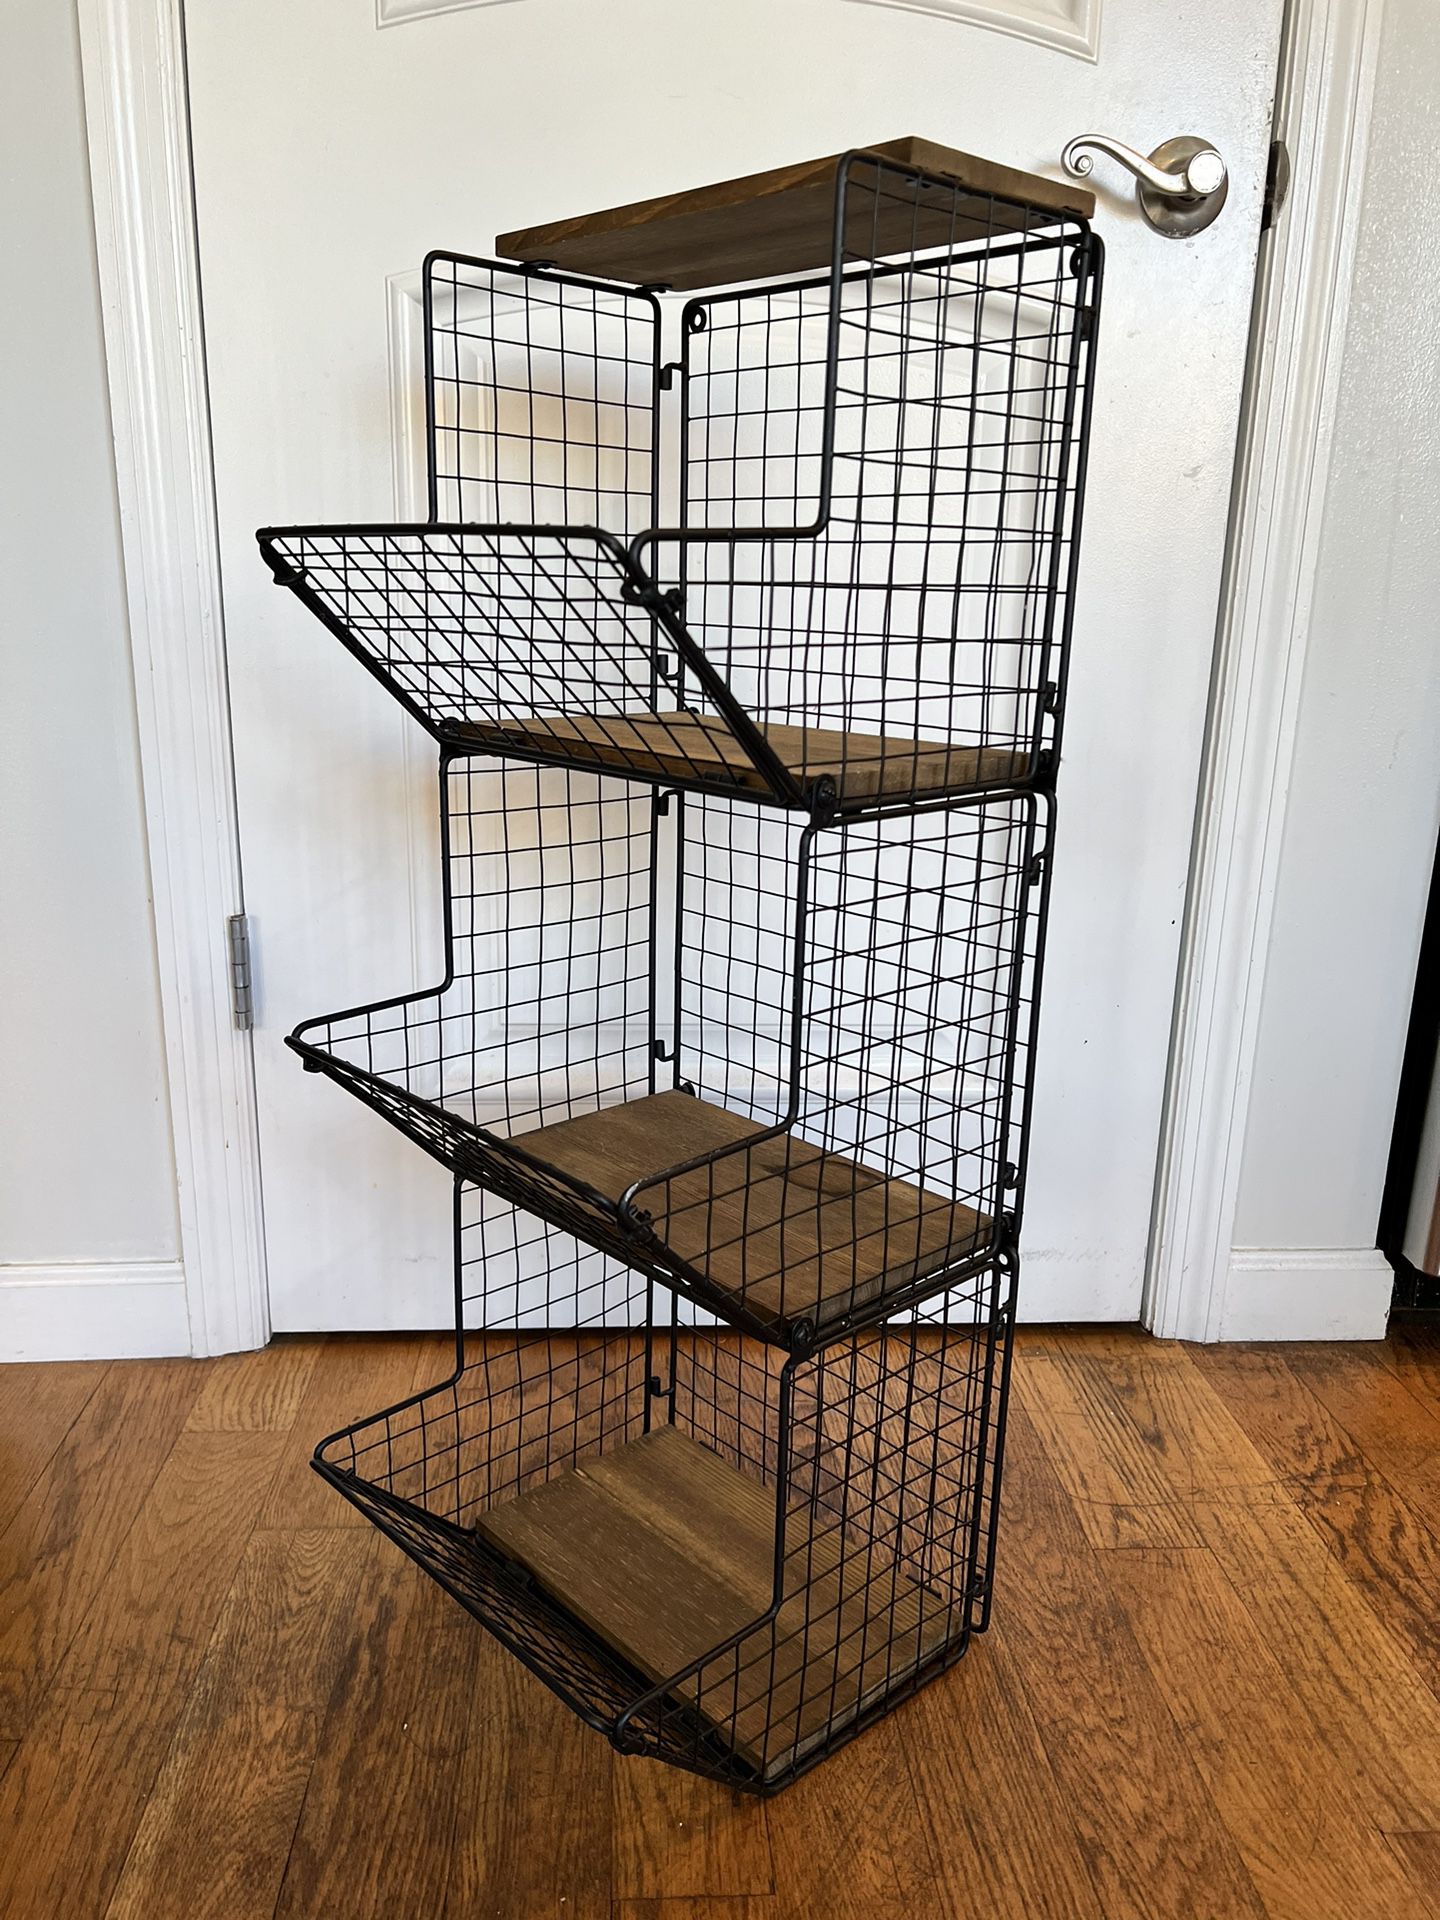 3 Tier Wall Mounted Metal Wire Basket Shelf